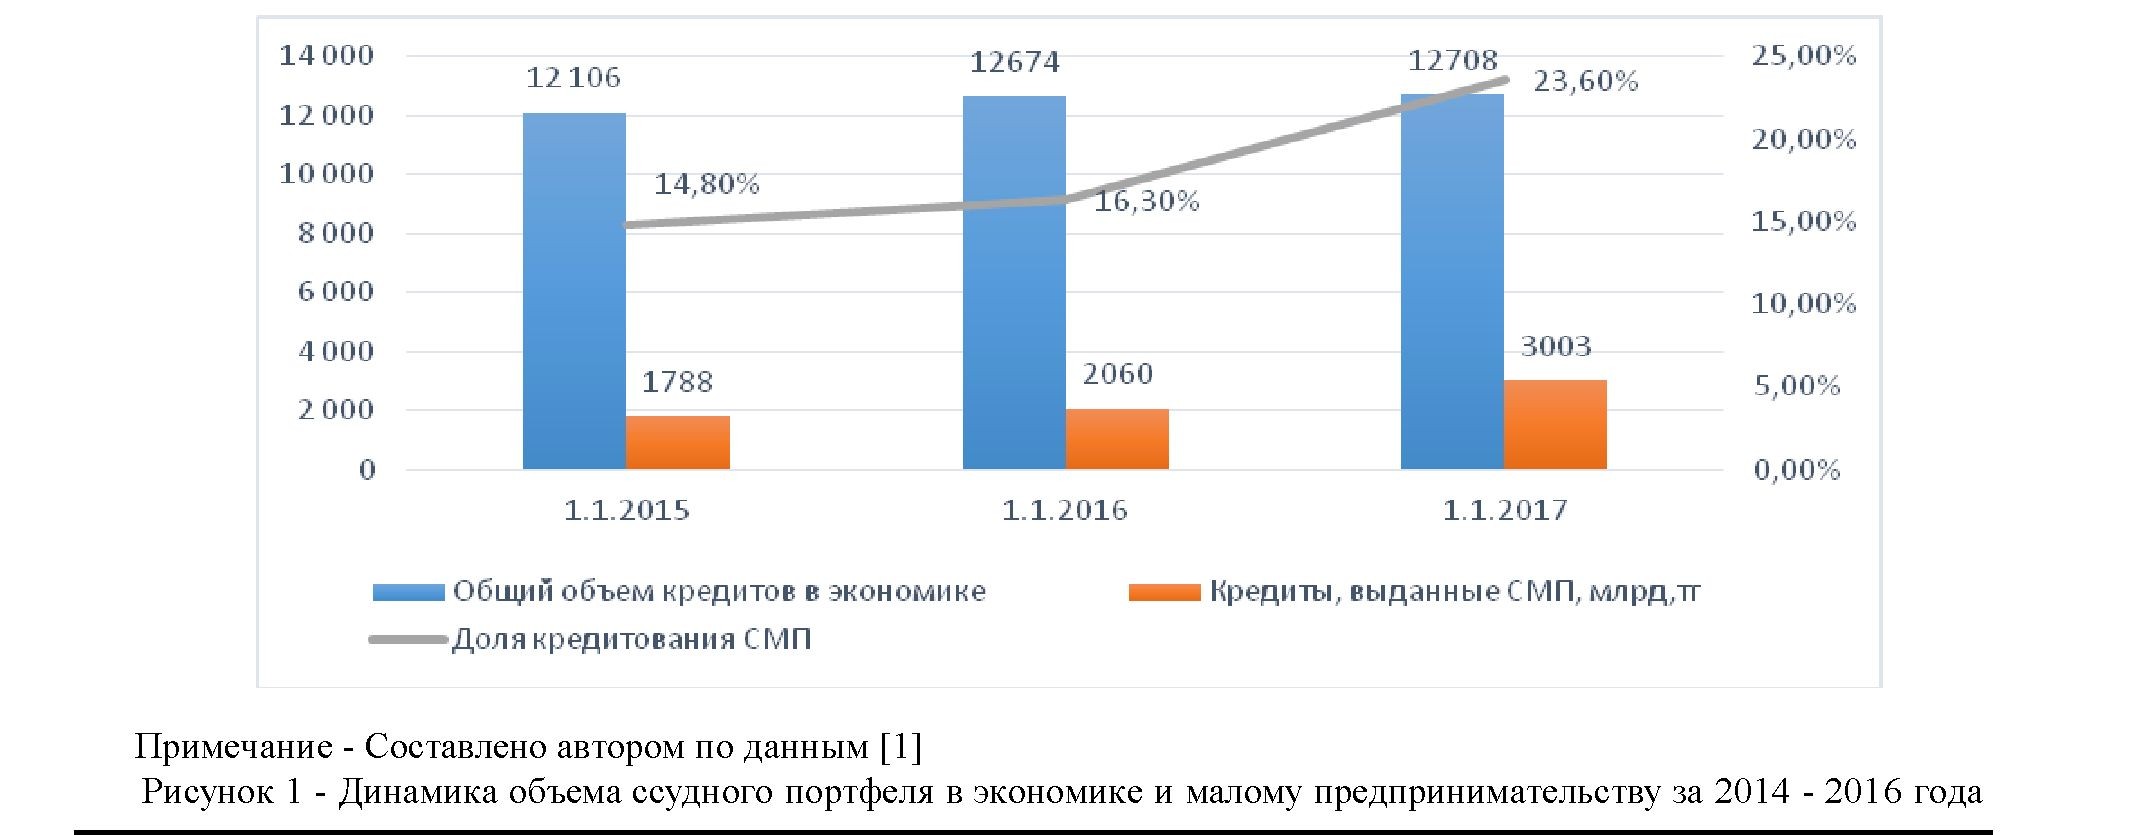 Кредитование малого и среднего бизнеса в республике Казахстан на современном этапе